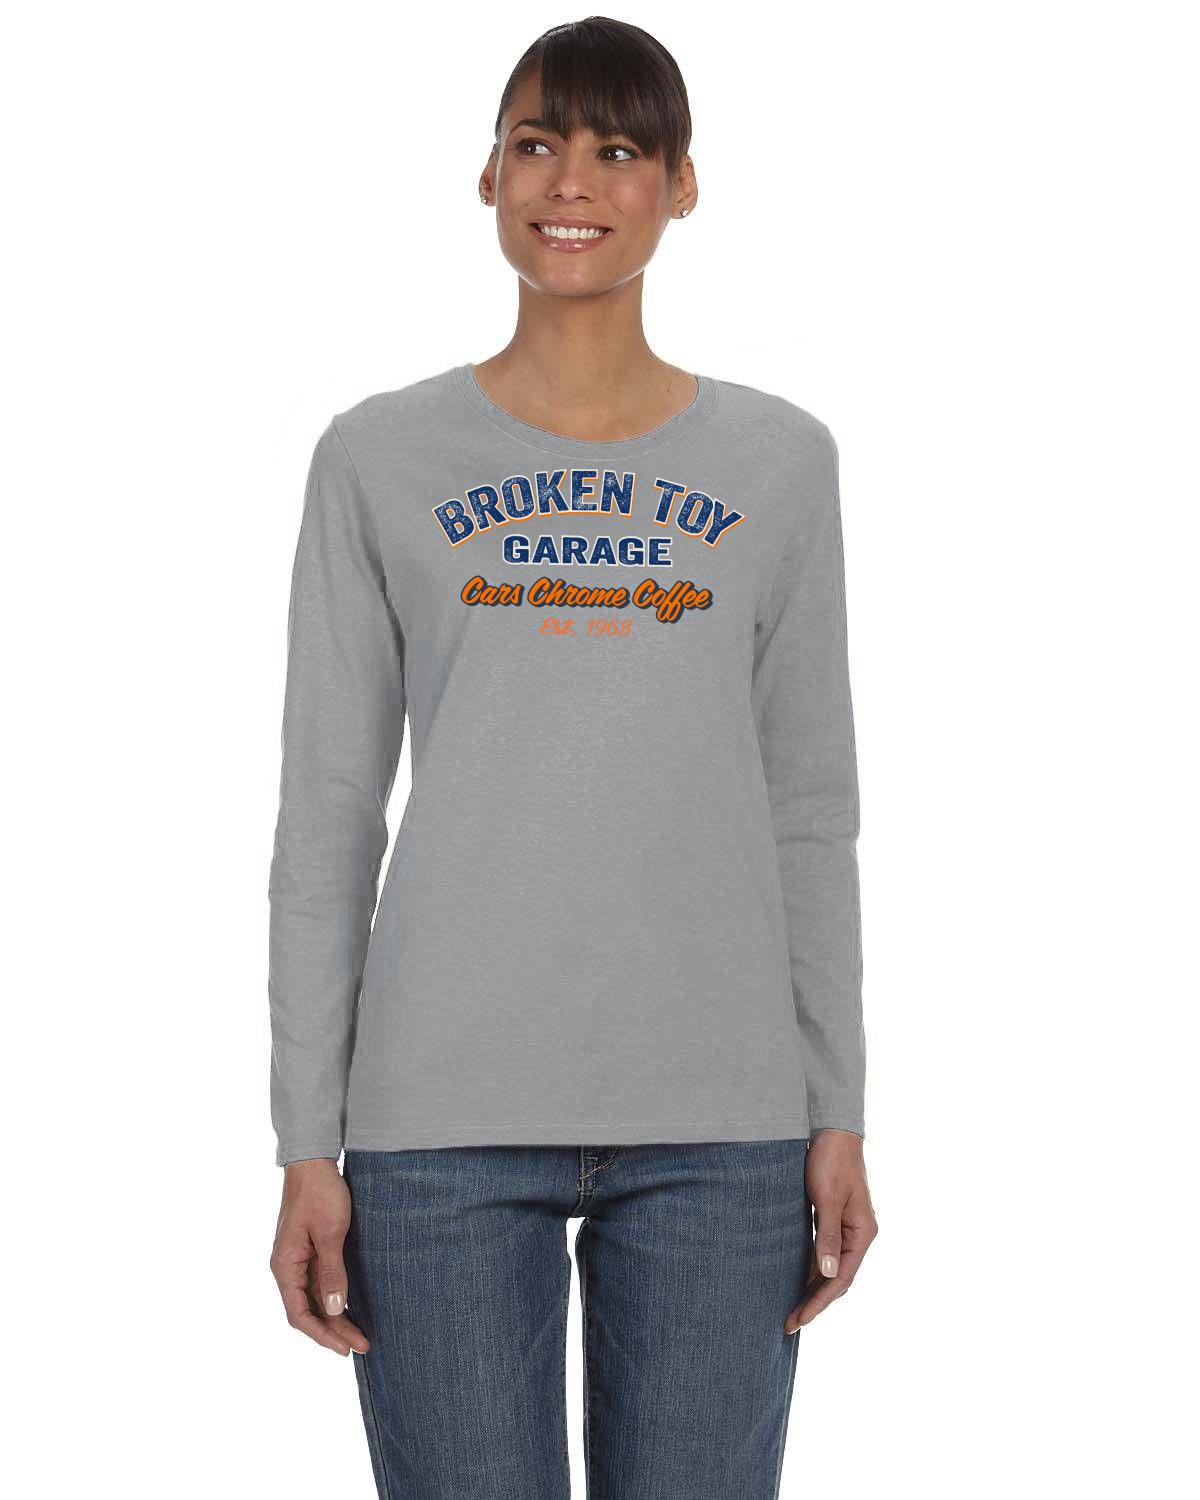 Broken Toy Garage Ladies' Long-Sleeve T-Shirt